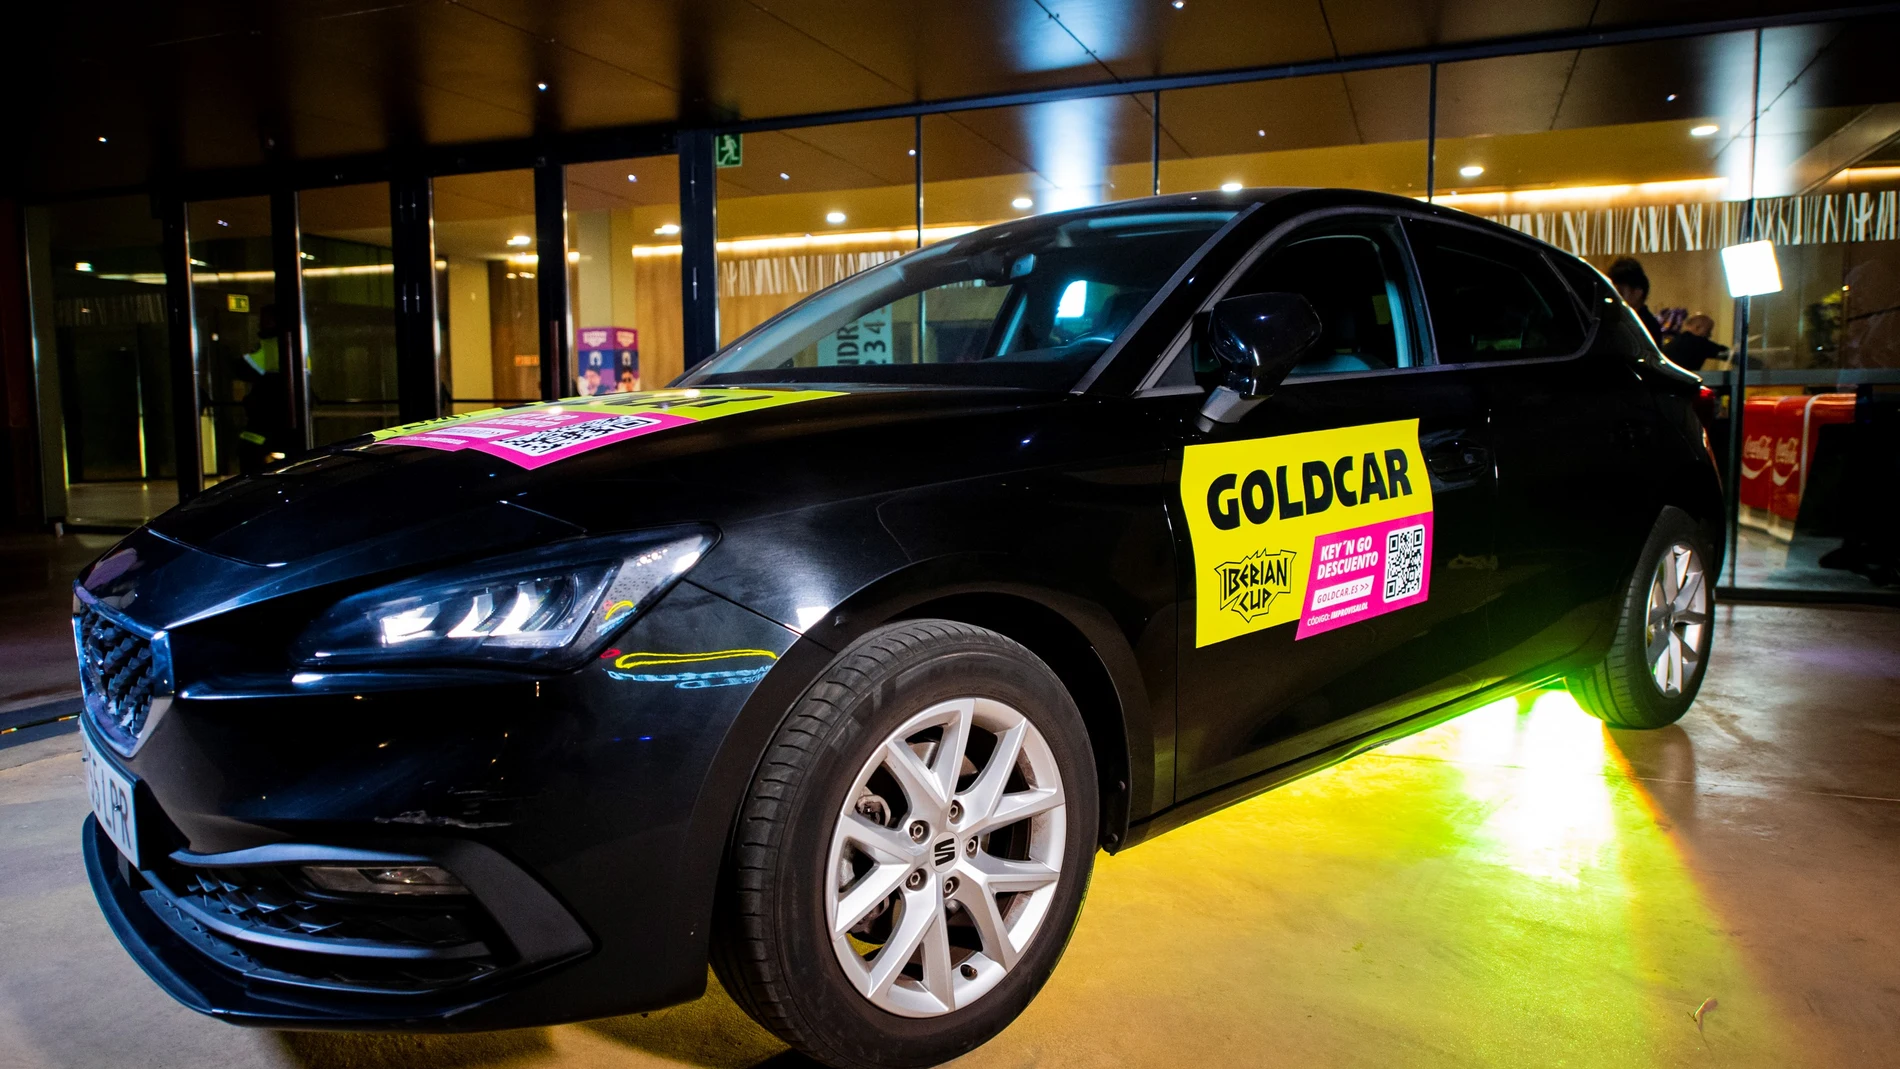 Goldcar llega a LVP como nuevo patrocinador